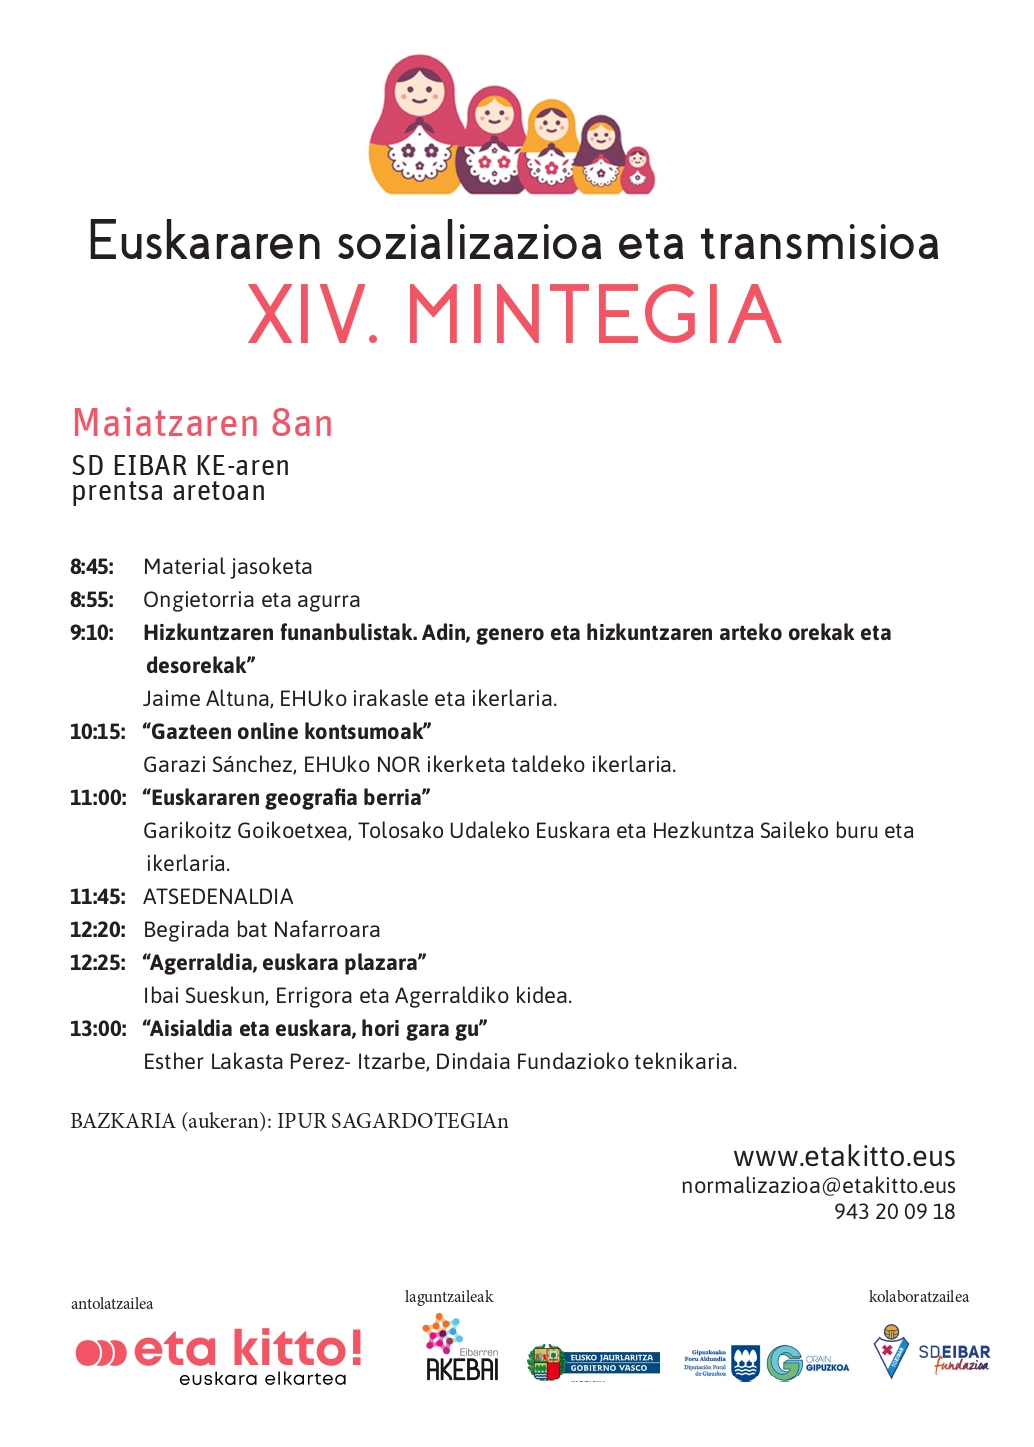 El 8 de mayo tendrá lugar el seminario Socialización y Transmisión del Euskera